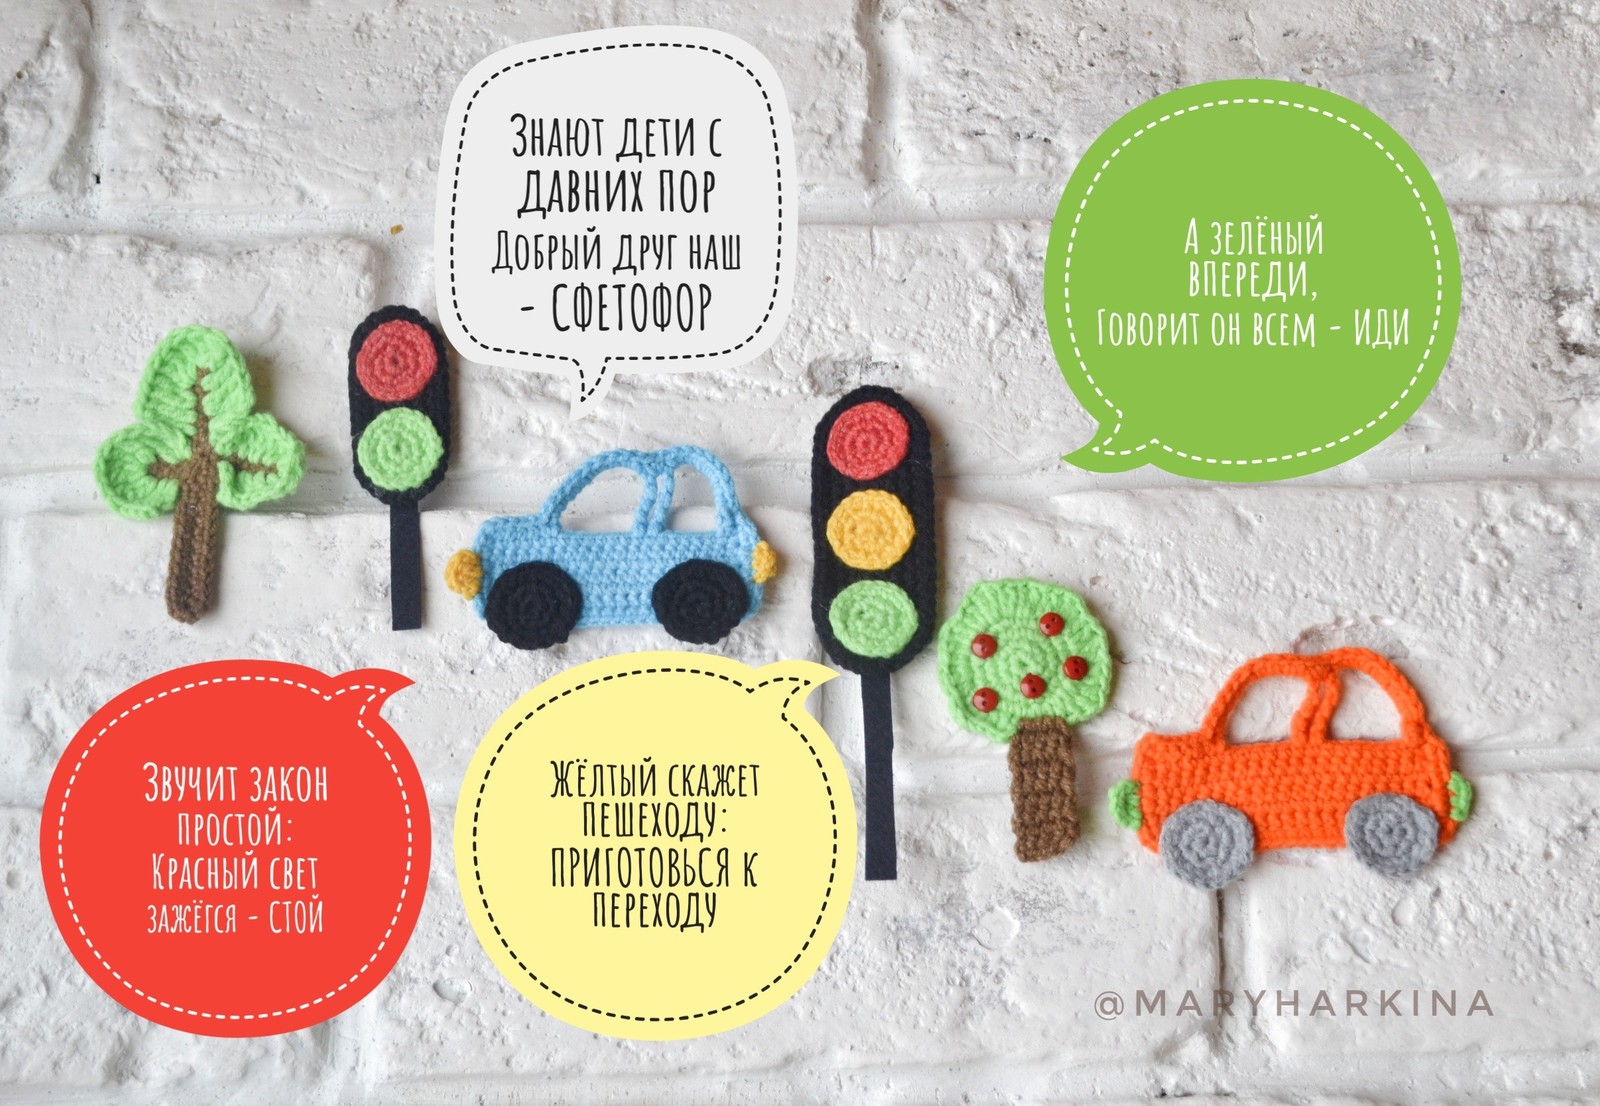 ТОП-6 быстрых и красивых поделок на тему правила дорожного движения в детский сад